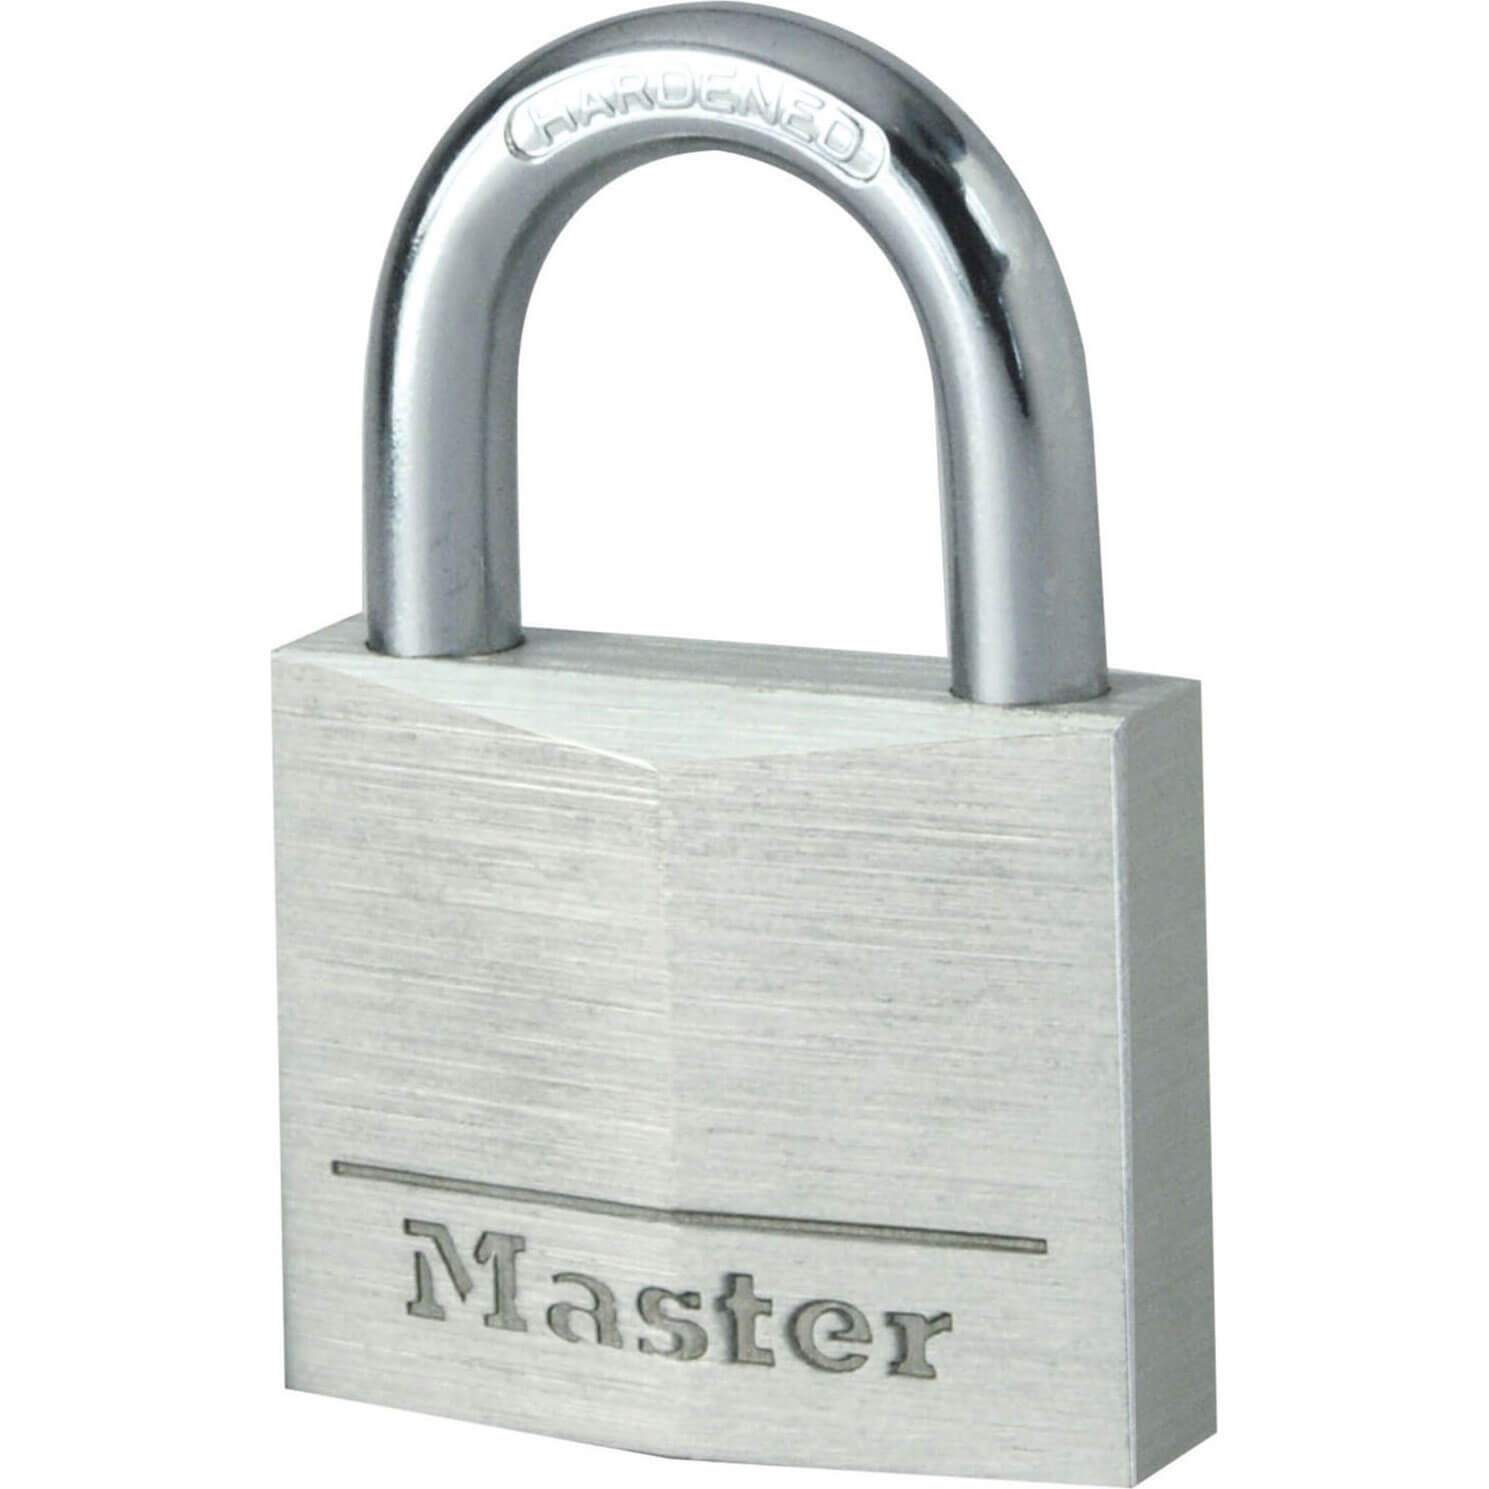 Image of Masterlock Aluminium Padlock 40mm Standard